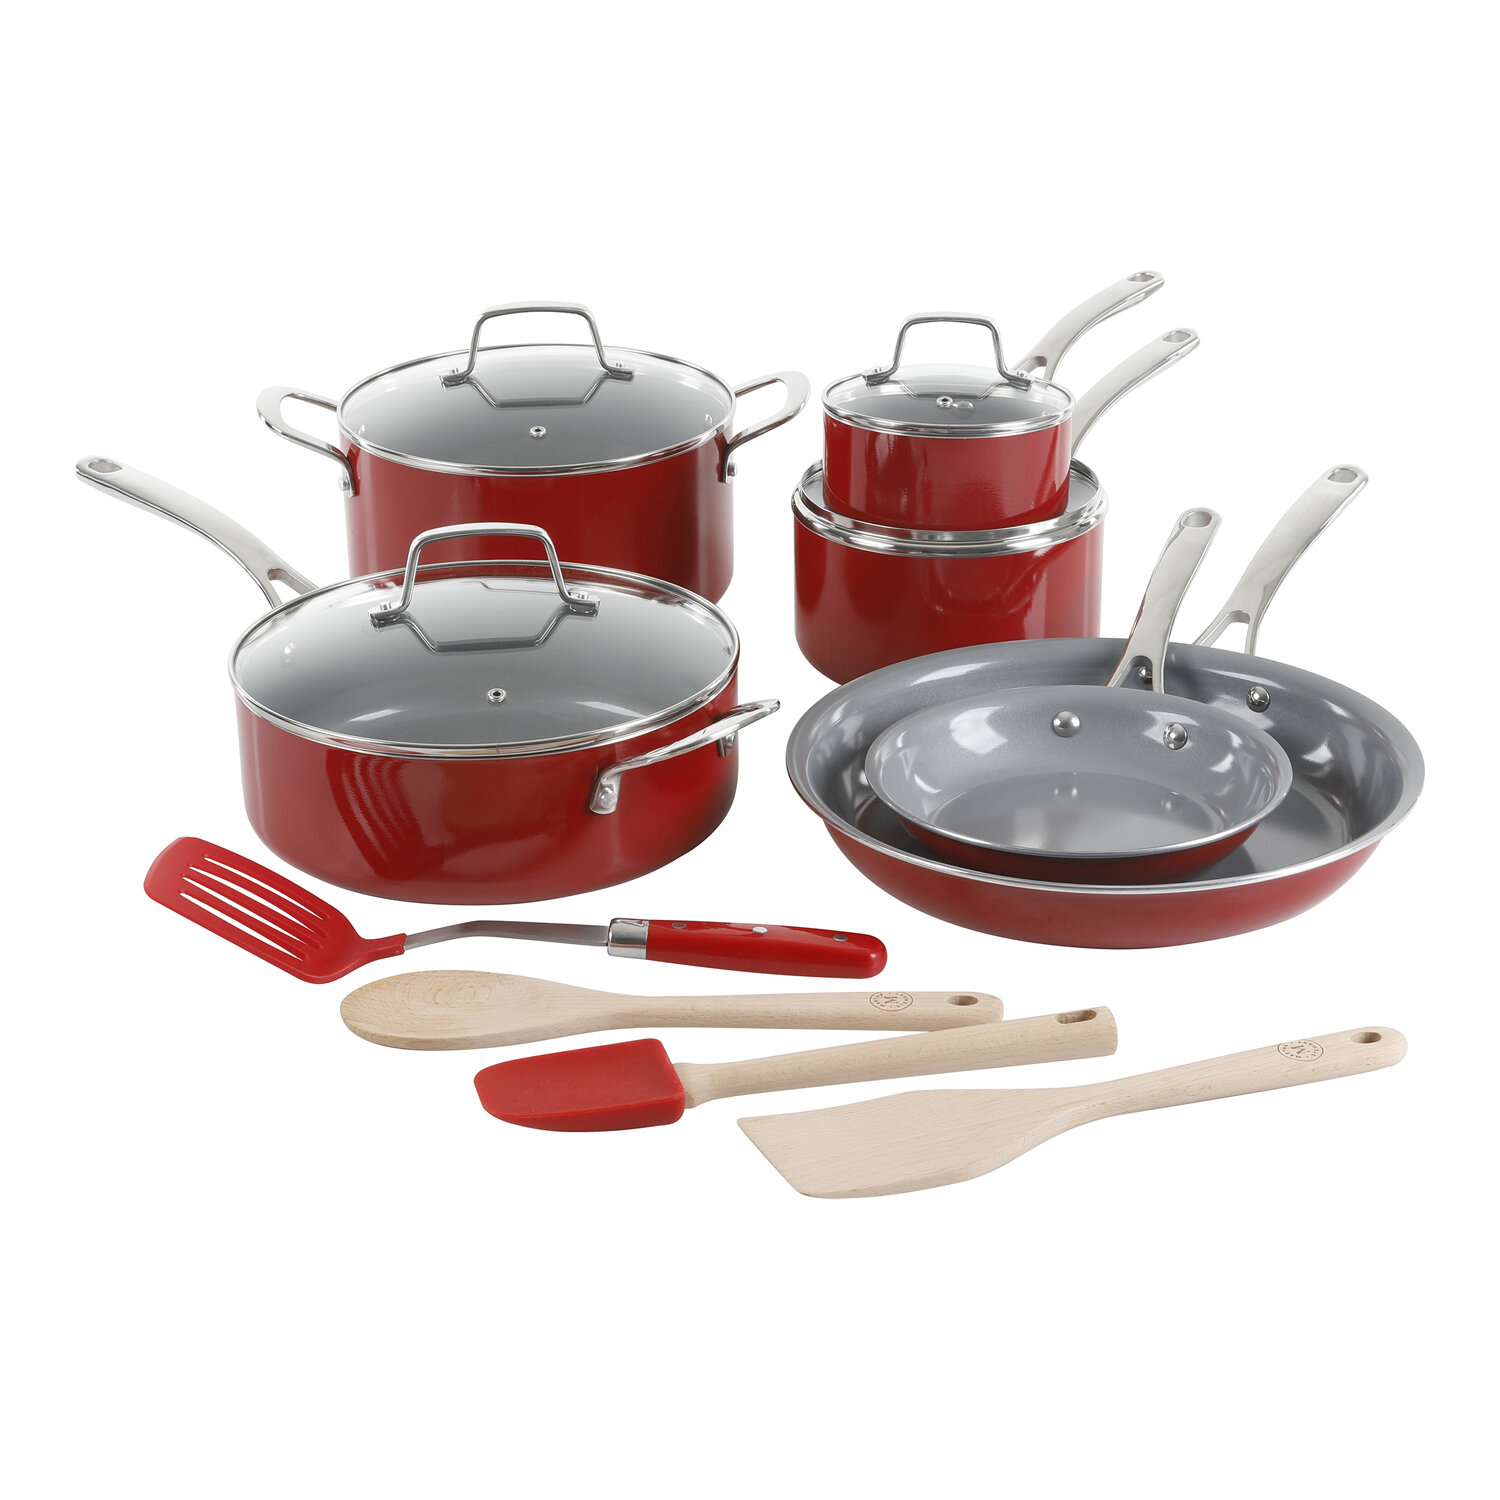 https://assets.wfcdn.com/im/81244236/compr-r85/1768/176833785/martha-stewart-14-piece-aluminum-non-stick-cookware-set.jpg